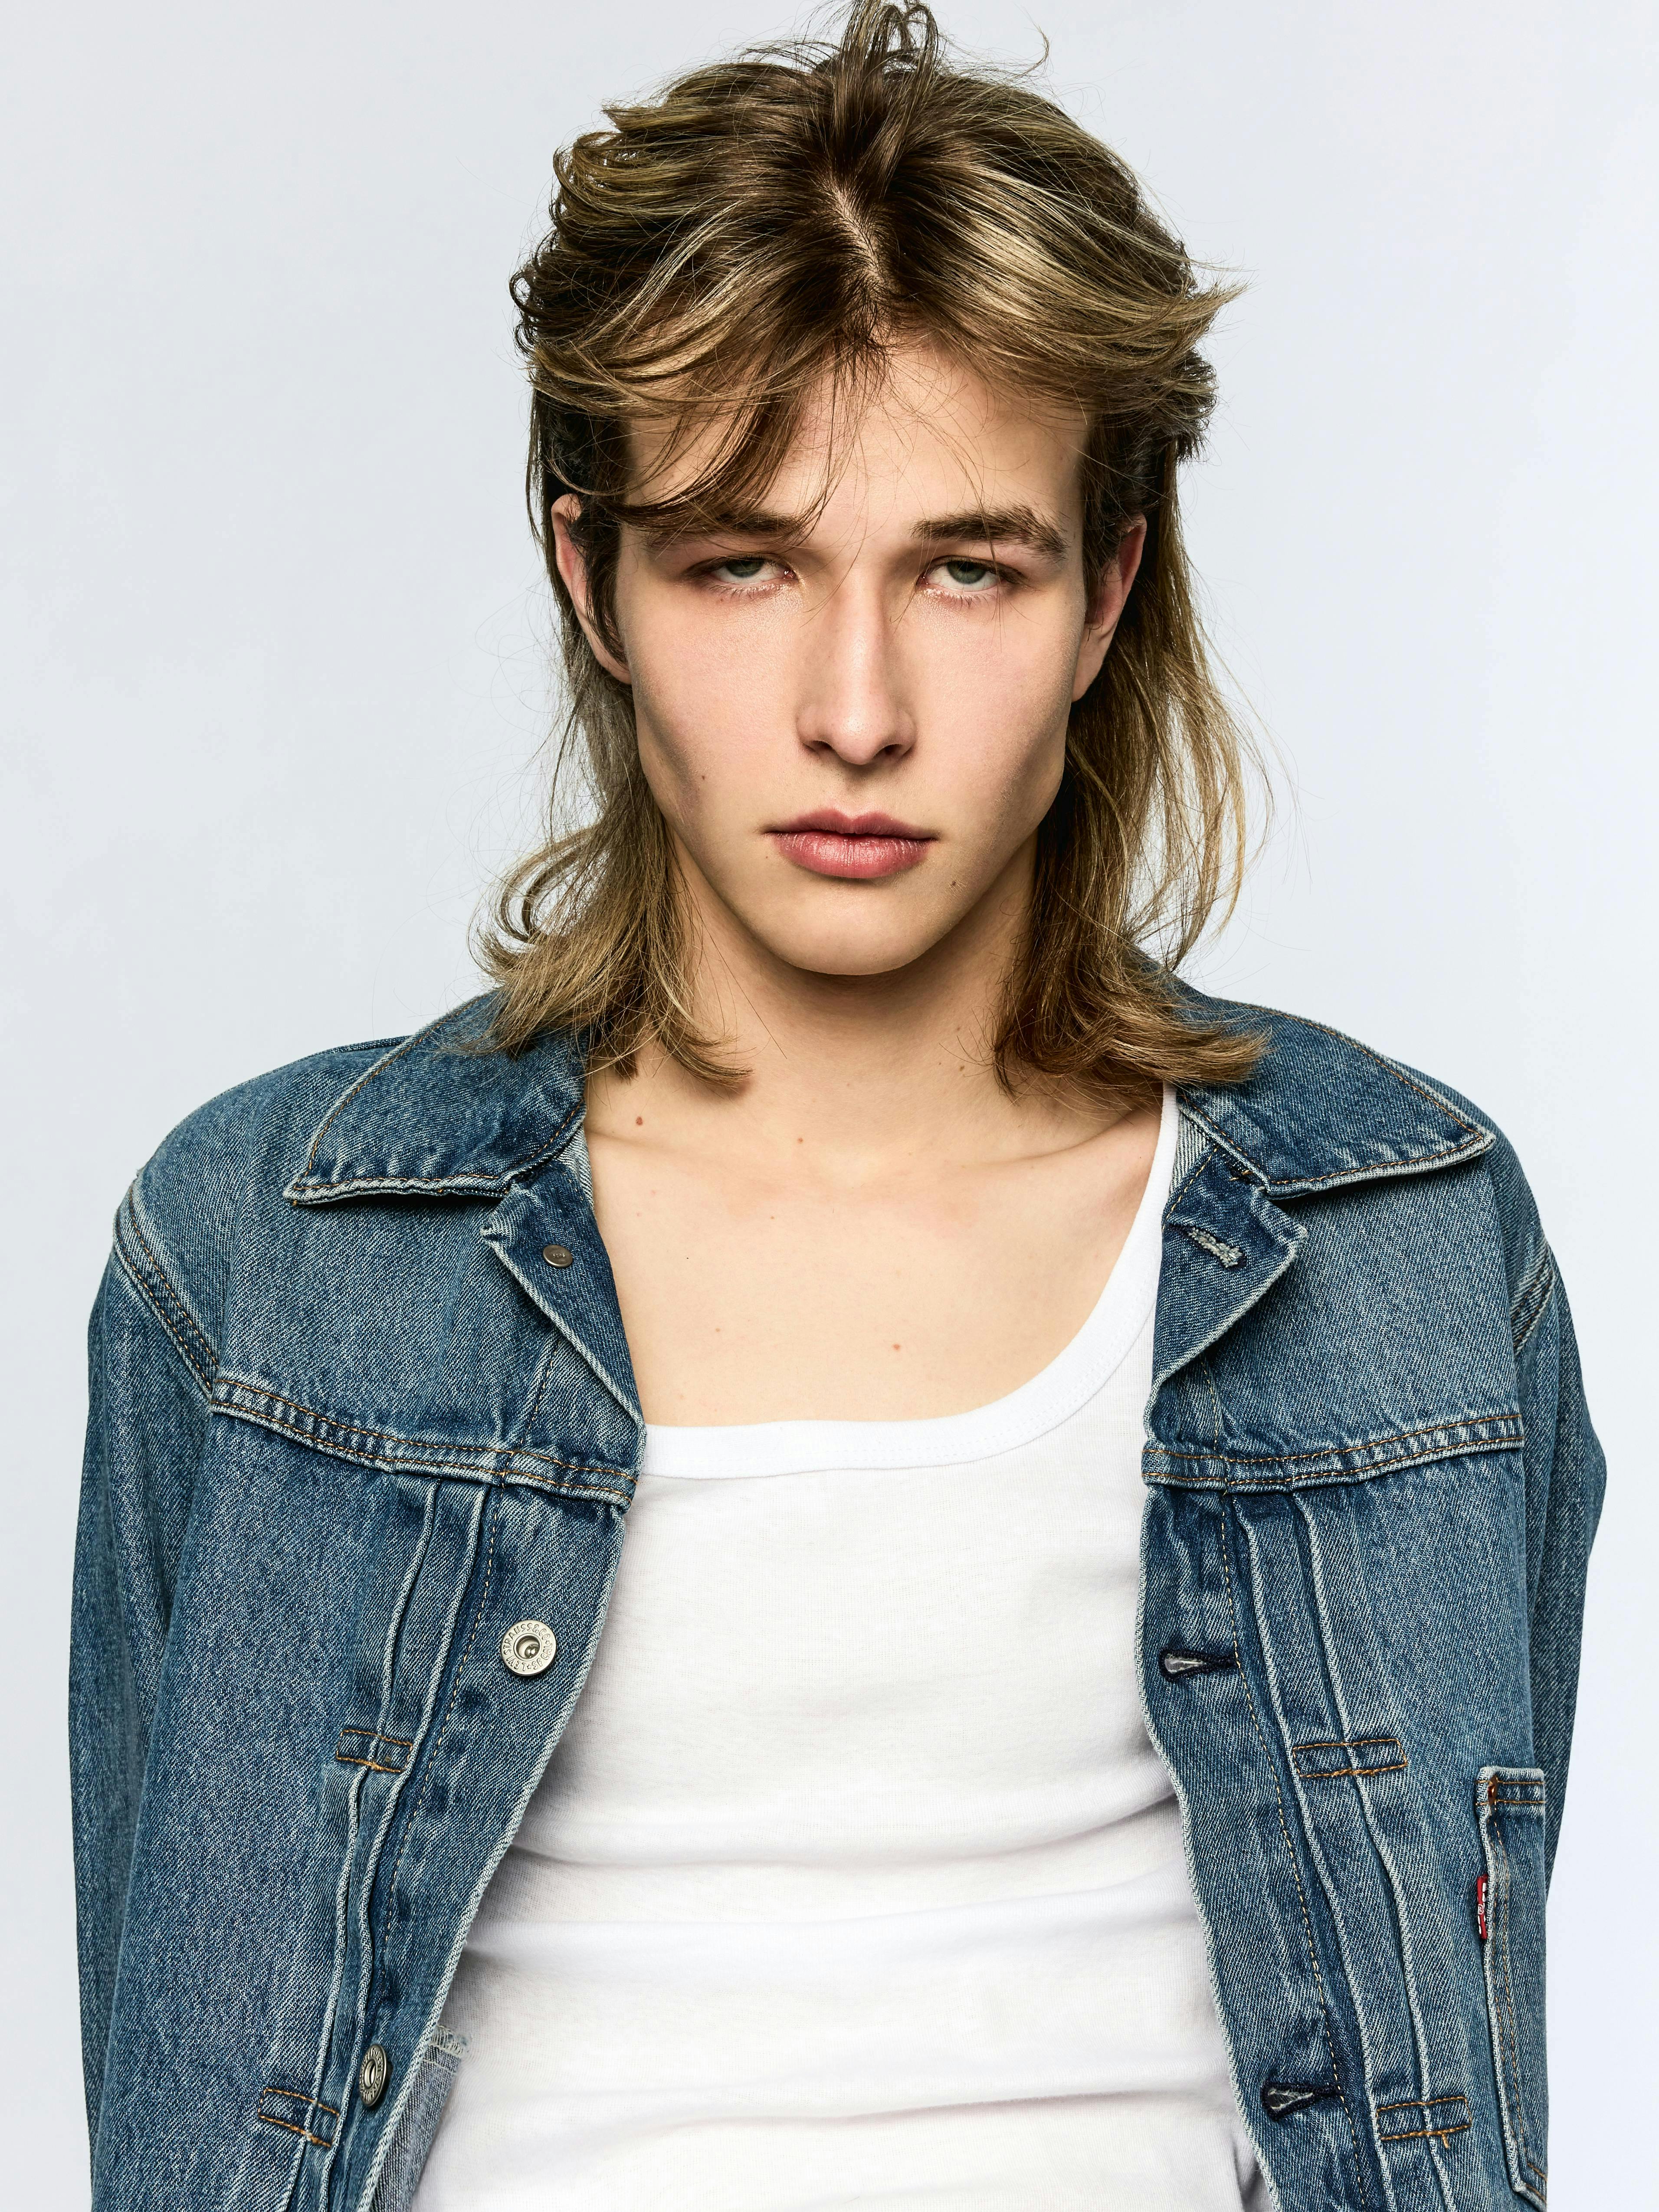 clothing pants coat jacket face head person photography portrait jeans